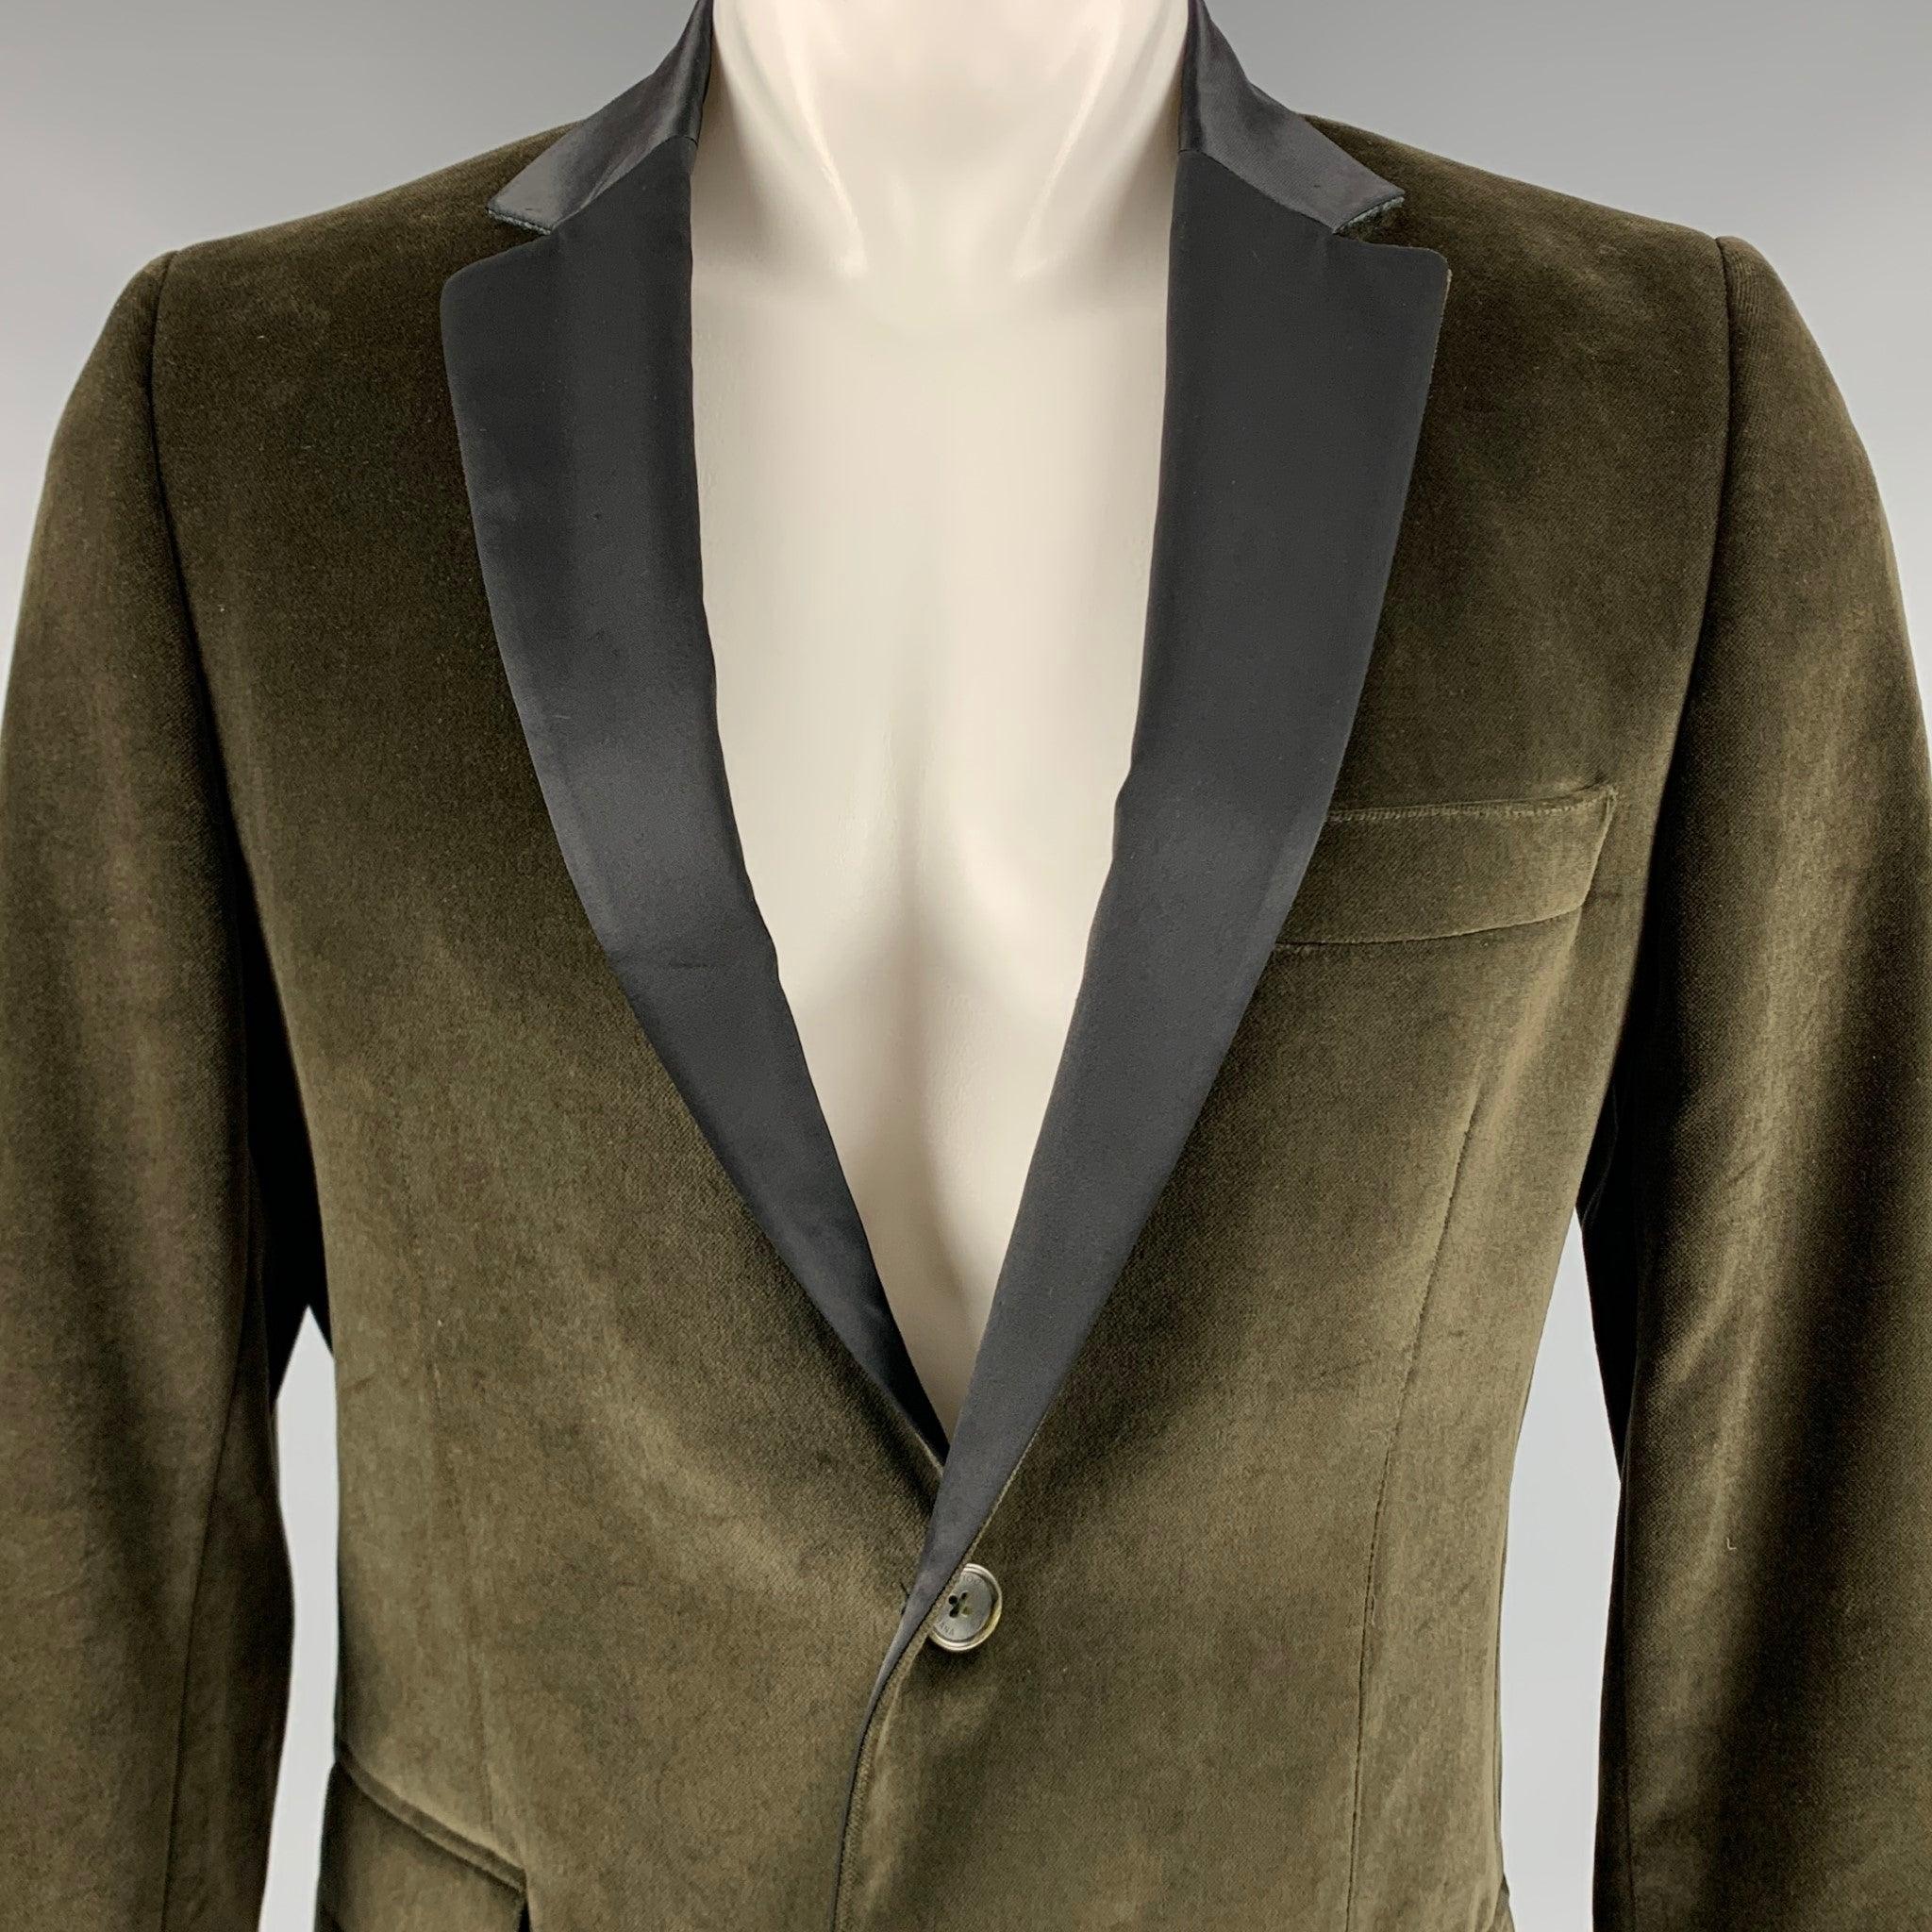 Manteau de sport D&G by DOLCE & GABBANA
en velours de coton vert olive, avec un revers à encoche noir contrasté, une simple ouverture au dos et une fermeture à double bouton. Fabriqué en Italie. Très bon état. Signes mineurs d'usure. 

Marqué :  